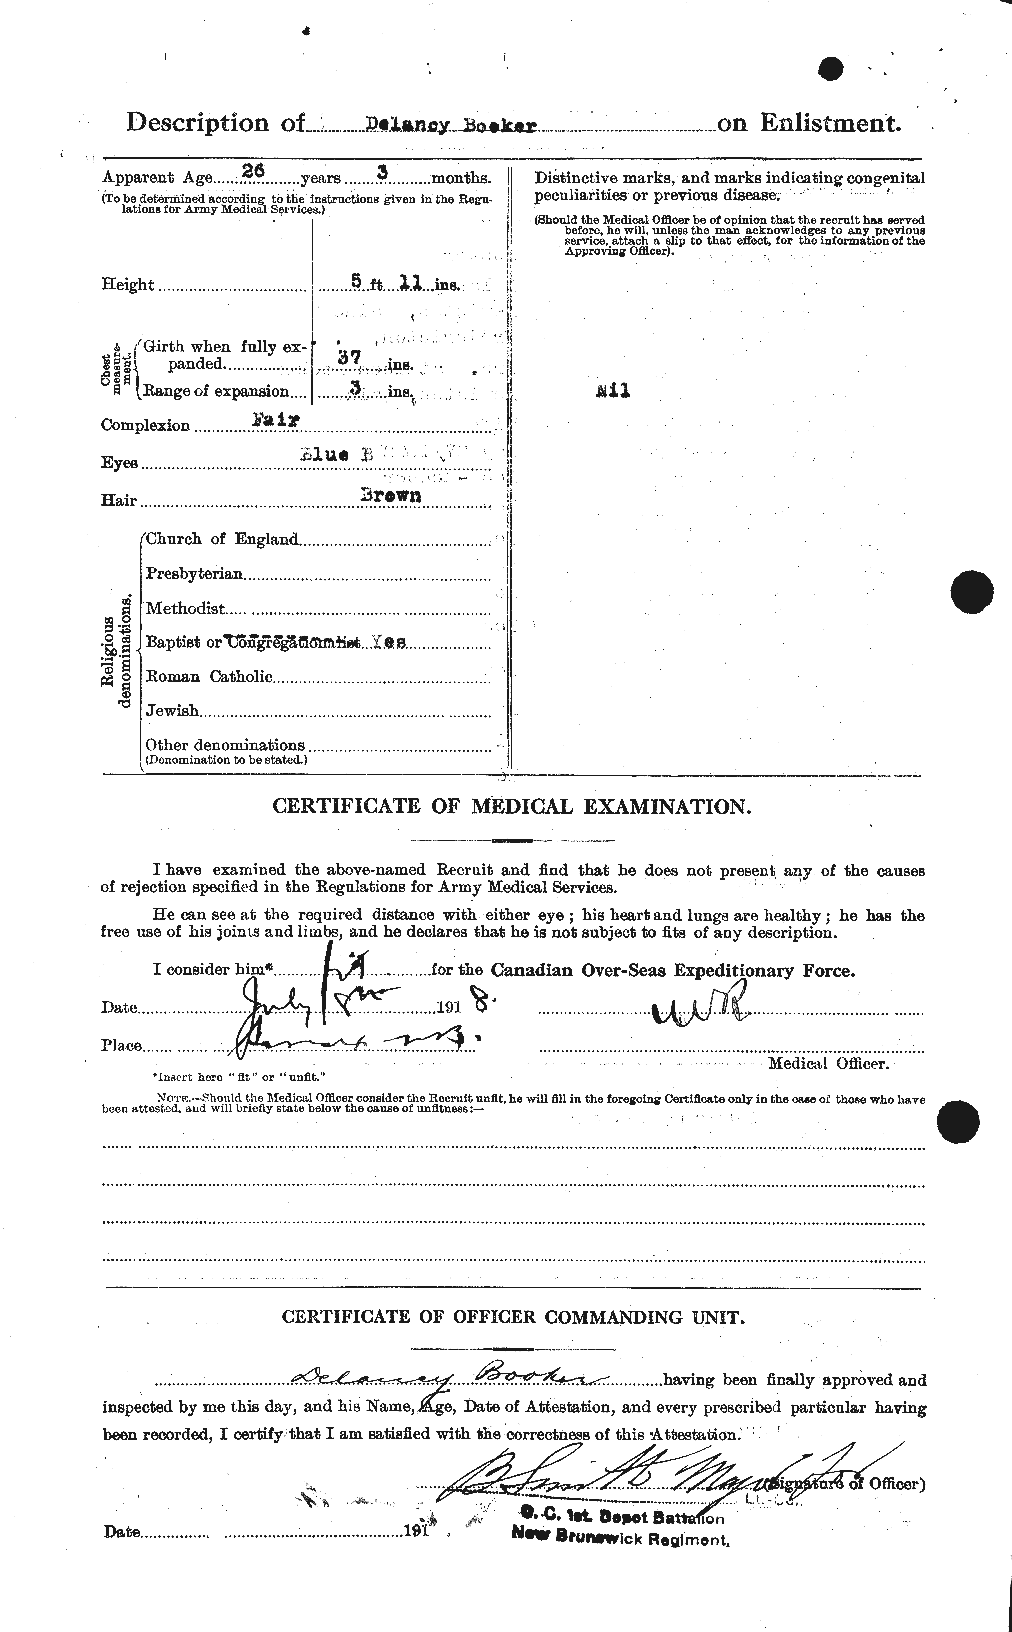 Dossiers du Personnel de la Première Guerre mondiale - CEC 251240b